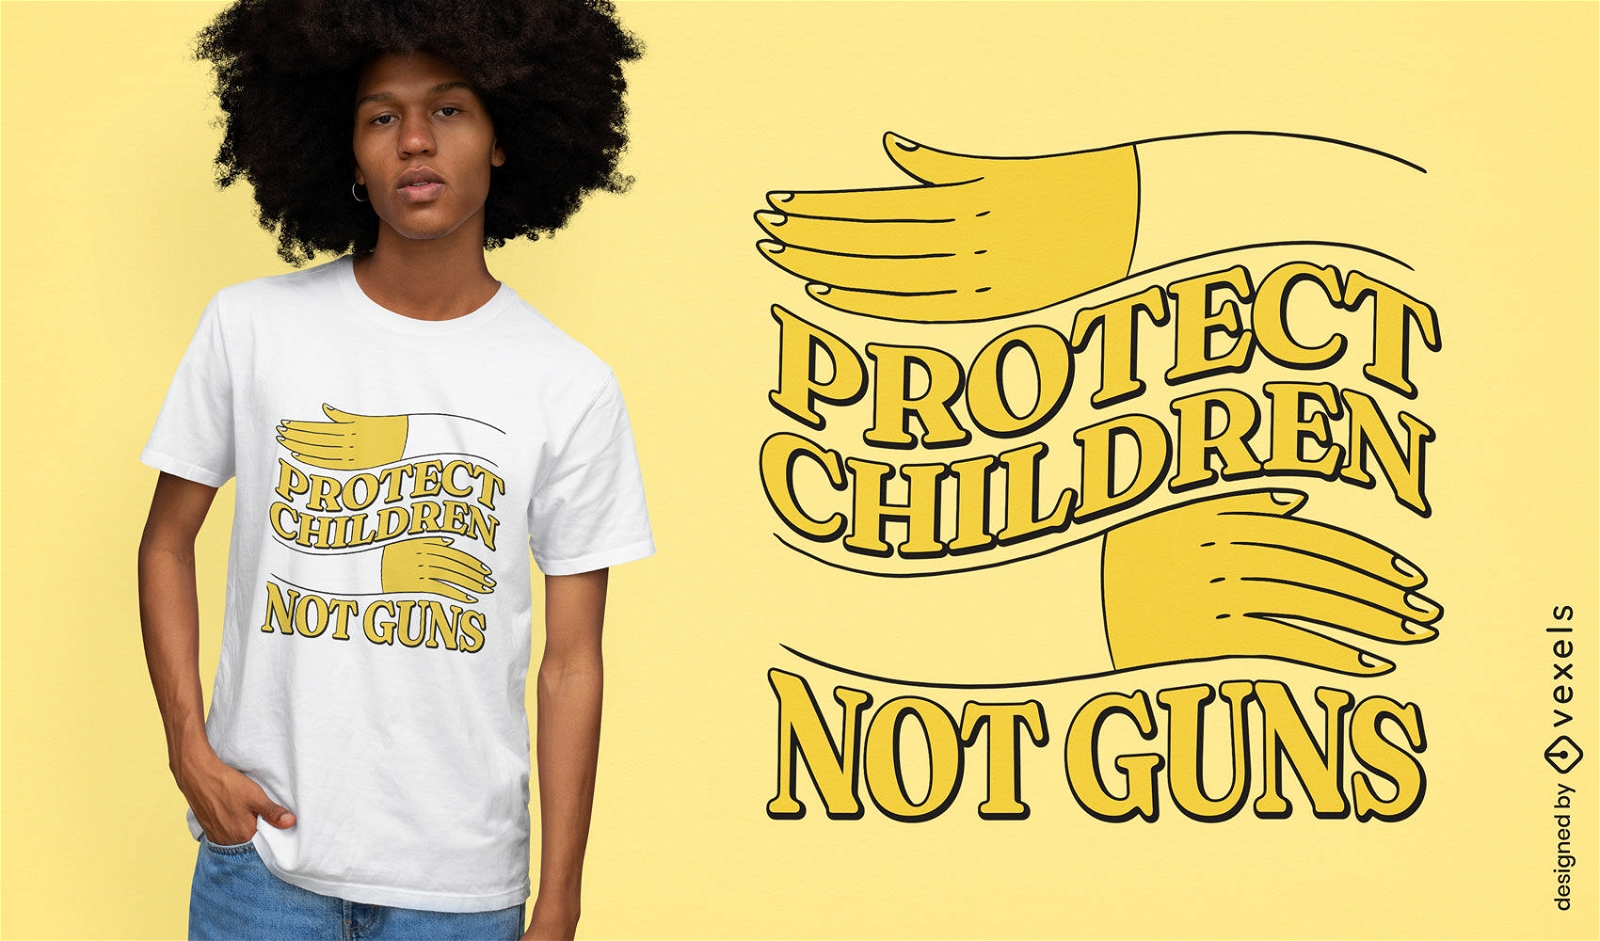 Proteja as crian?as citam o design da camiseta